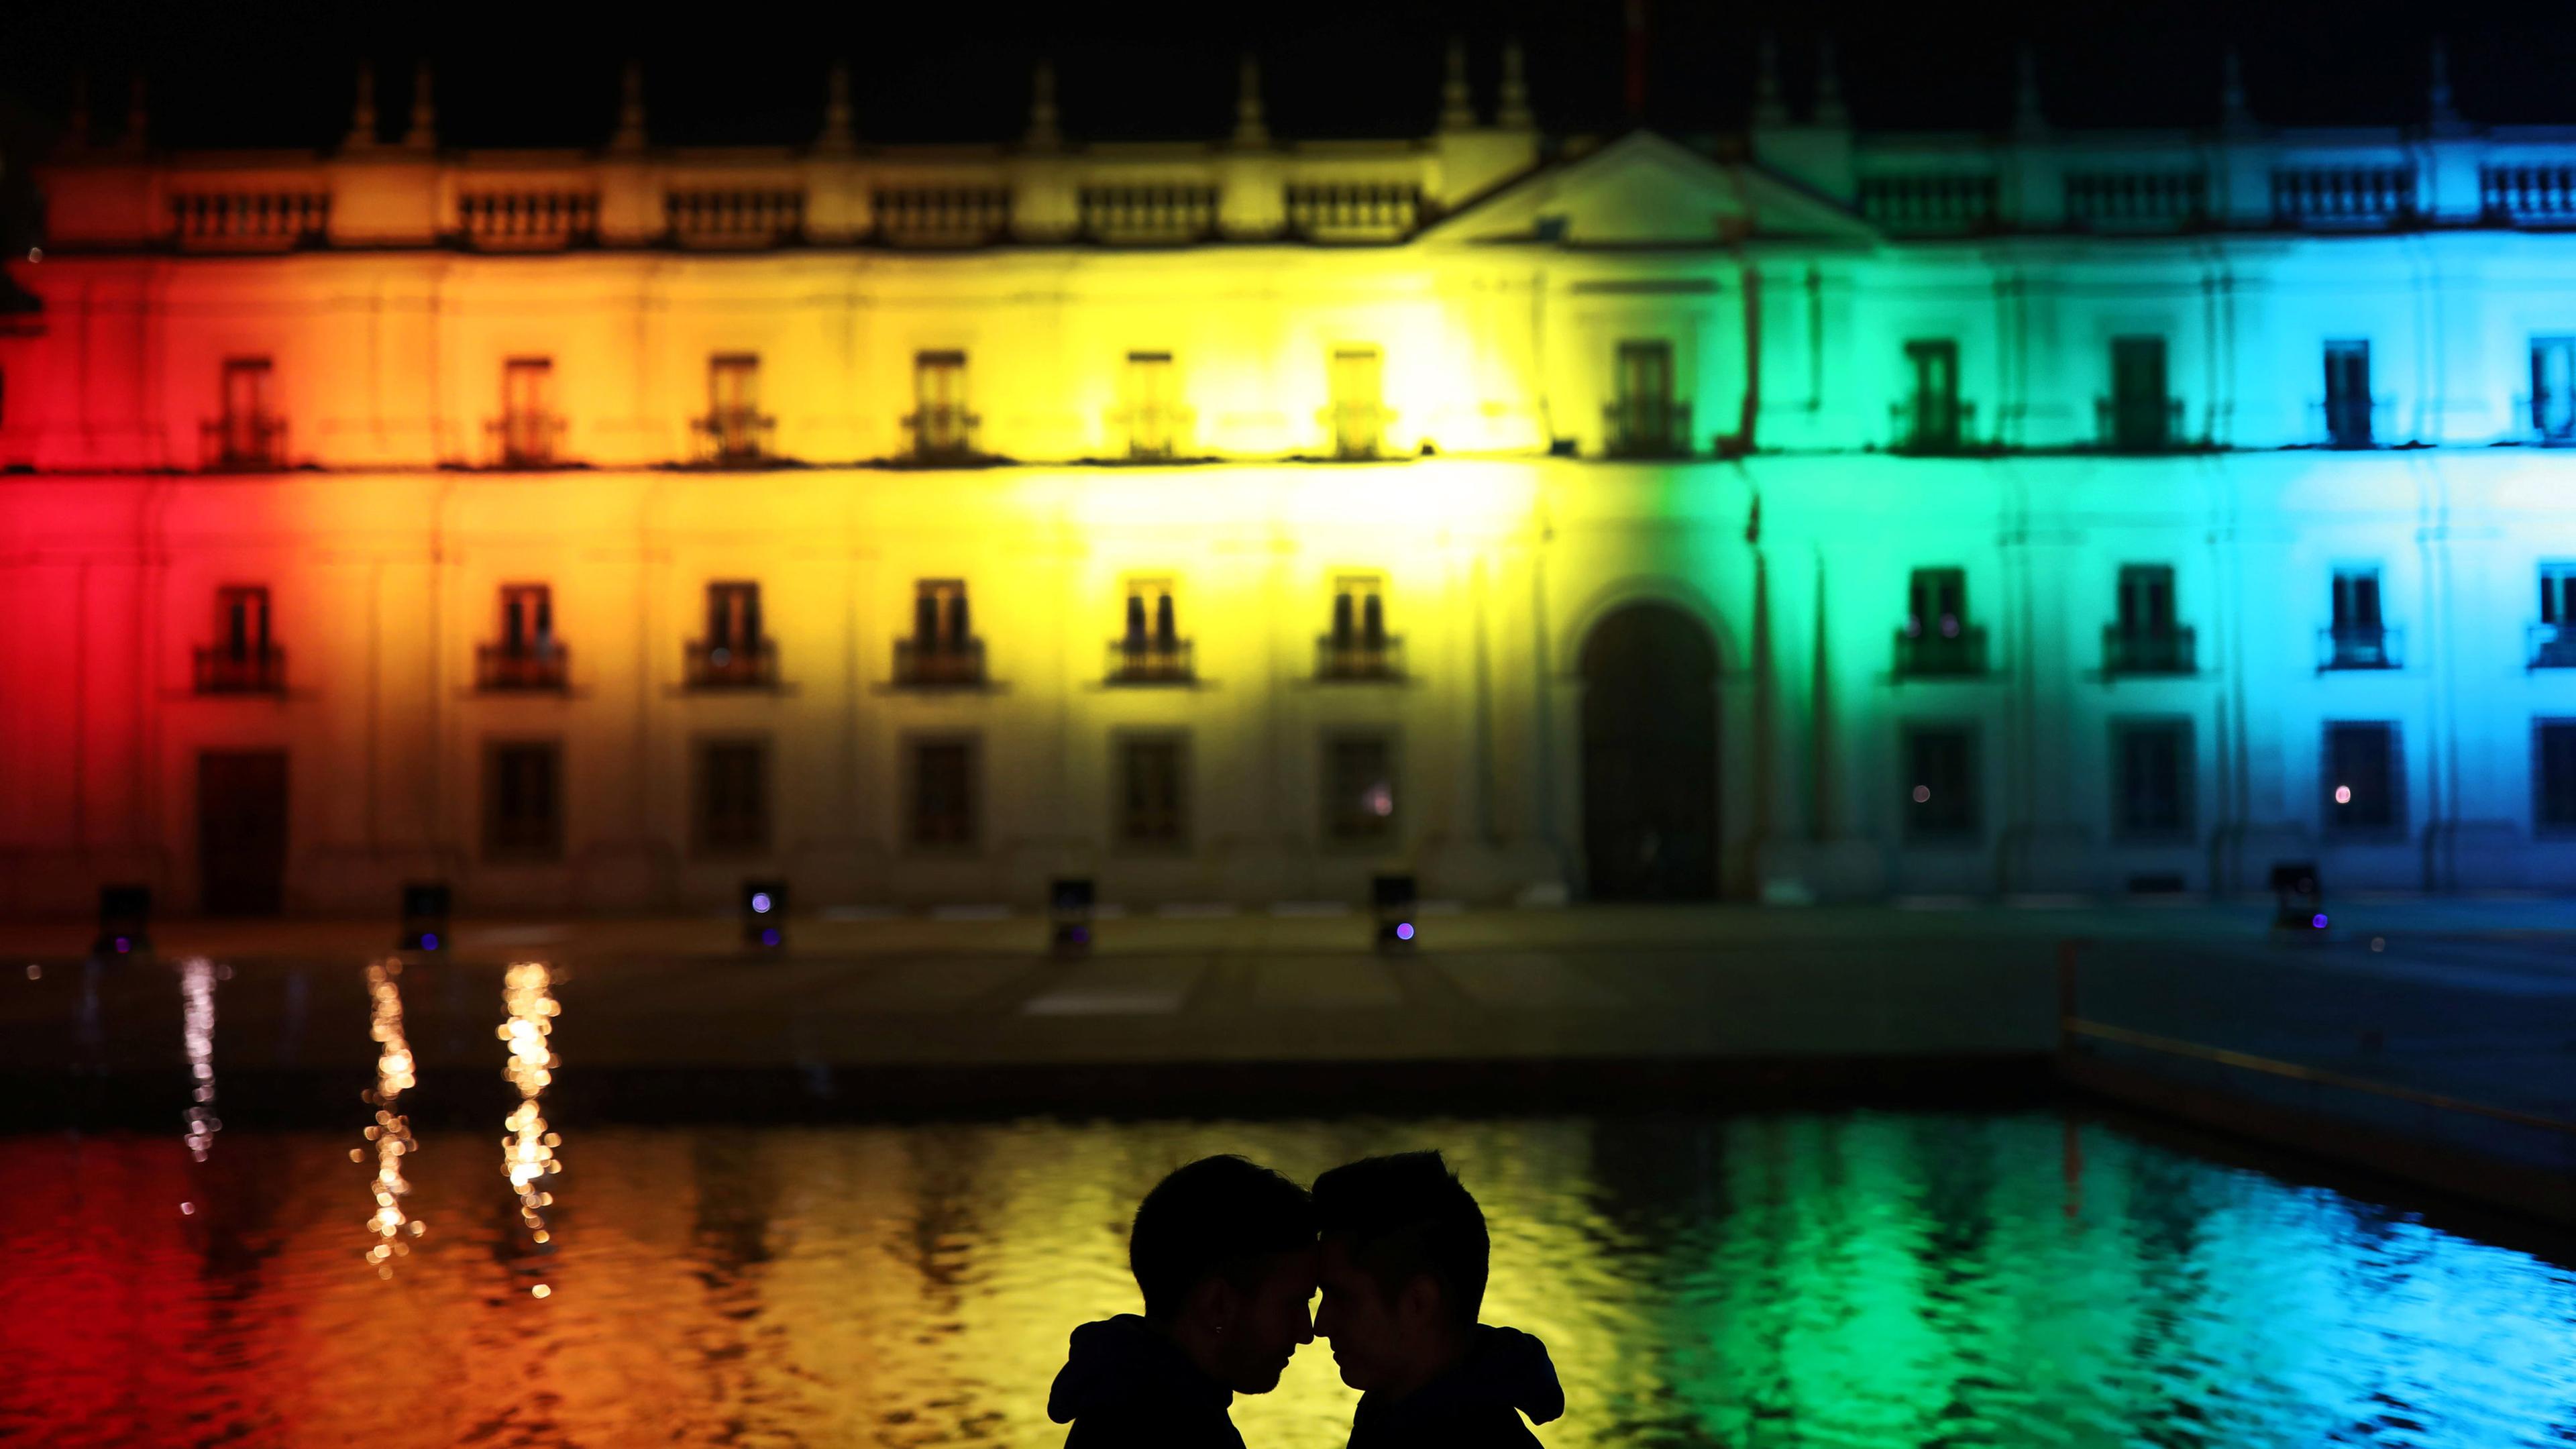 Paar vor einem Gebäude, das in bunten Farben bestrahlt wird